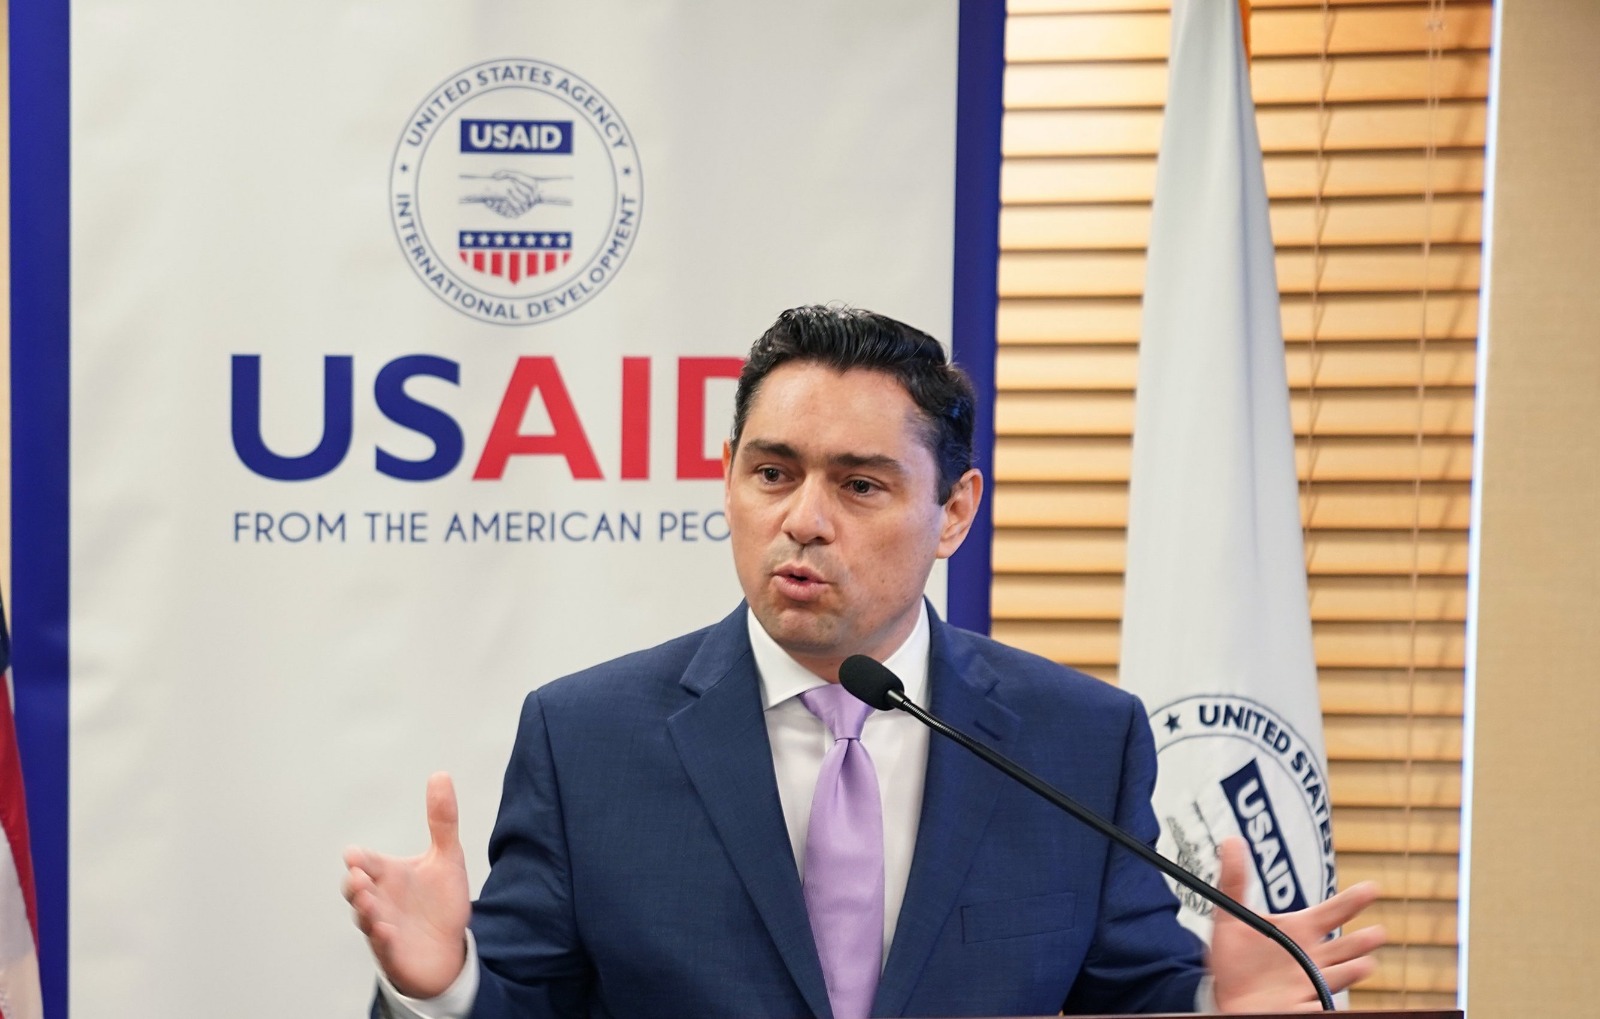 Vecchio agradeció a Rubio por promover la protección a venezolanos en EEUU